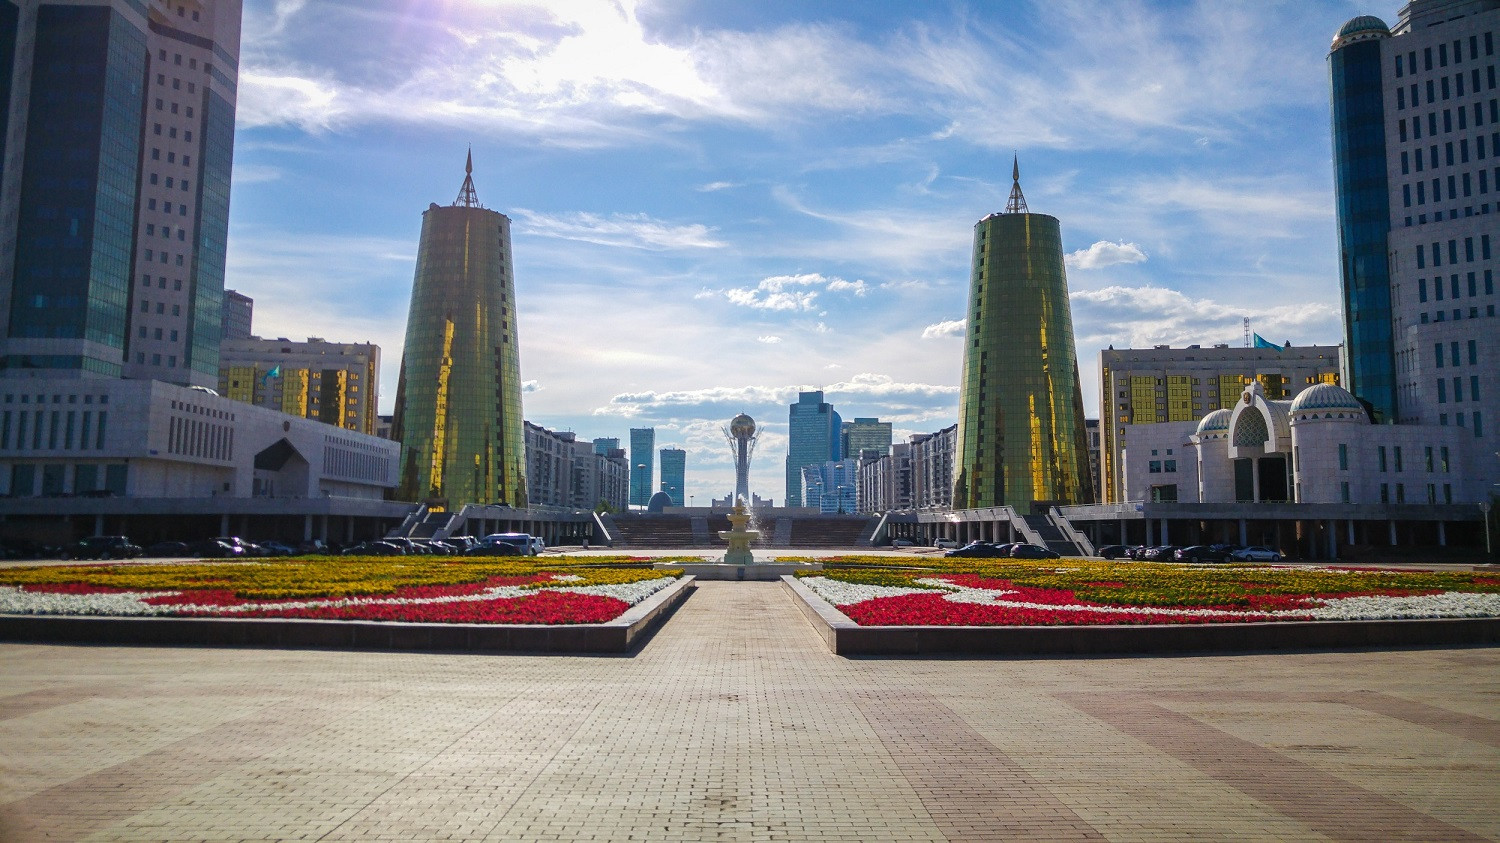 Astanakazakhstanpresidentialpalacesquare